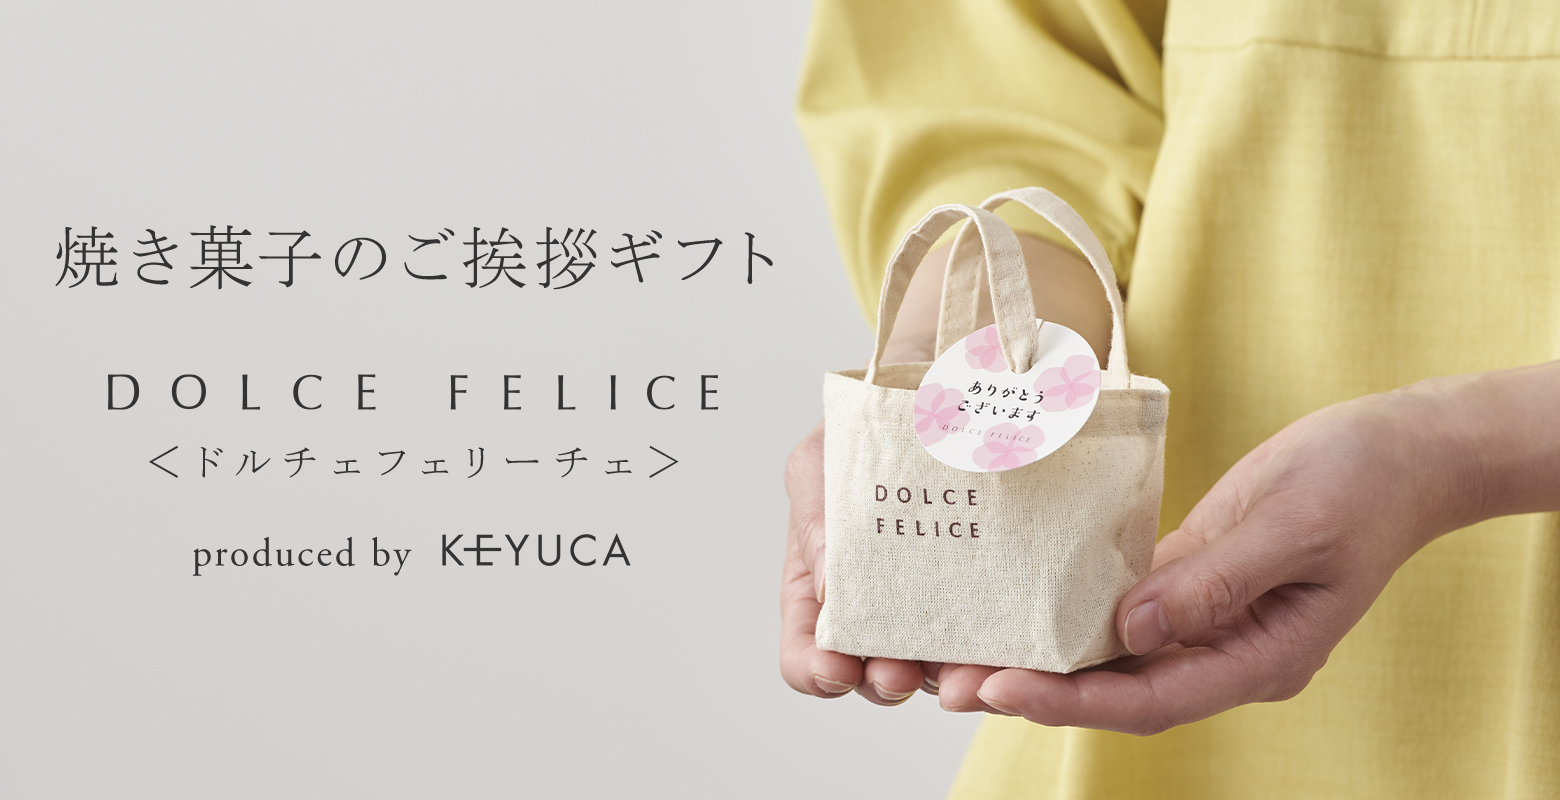 ケユカがプロデュースするスイーツブランド「ドルチェフェリーチェ」からおすすめのご挨拶ギフトをご紹介します。